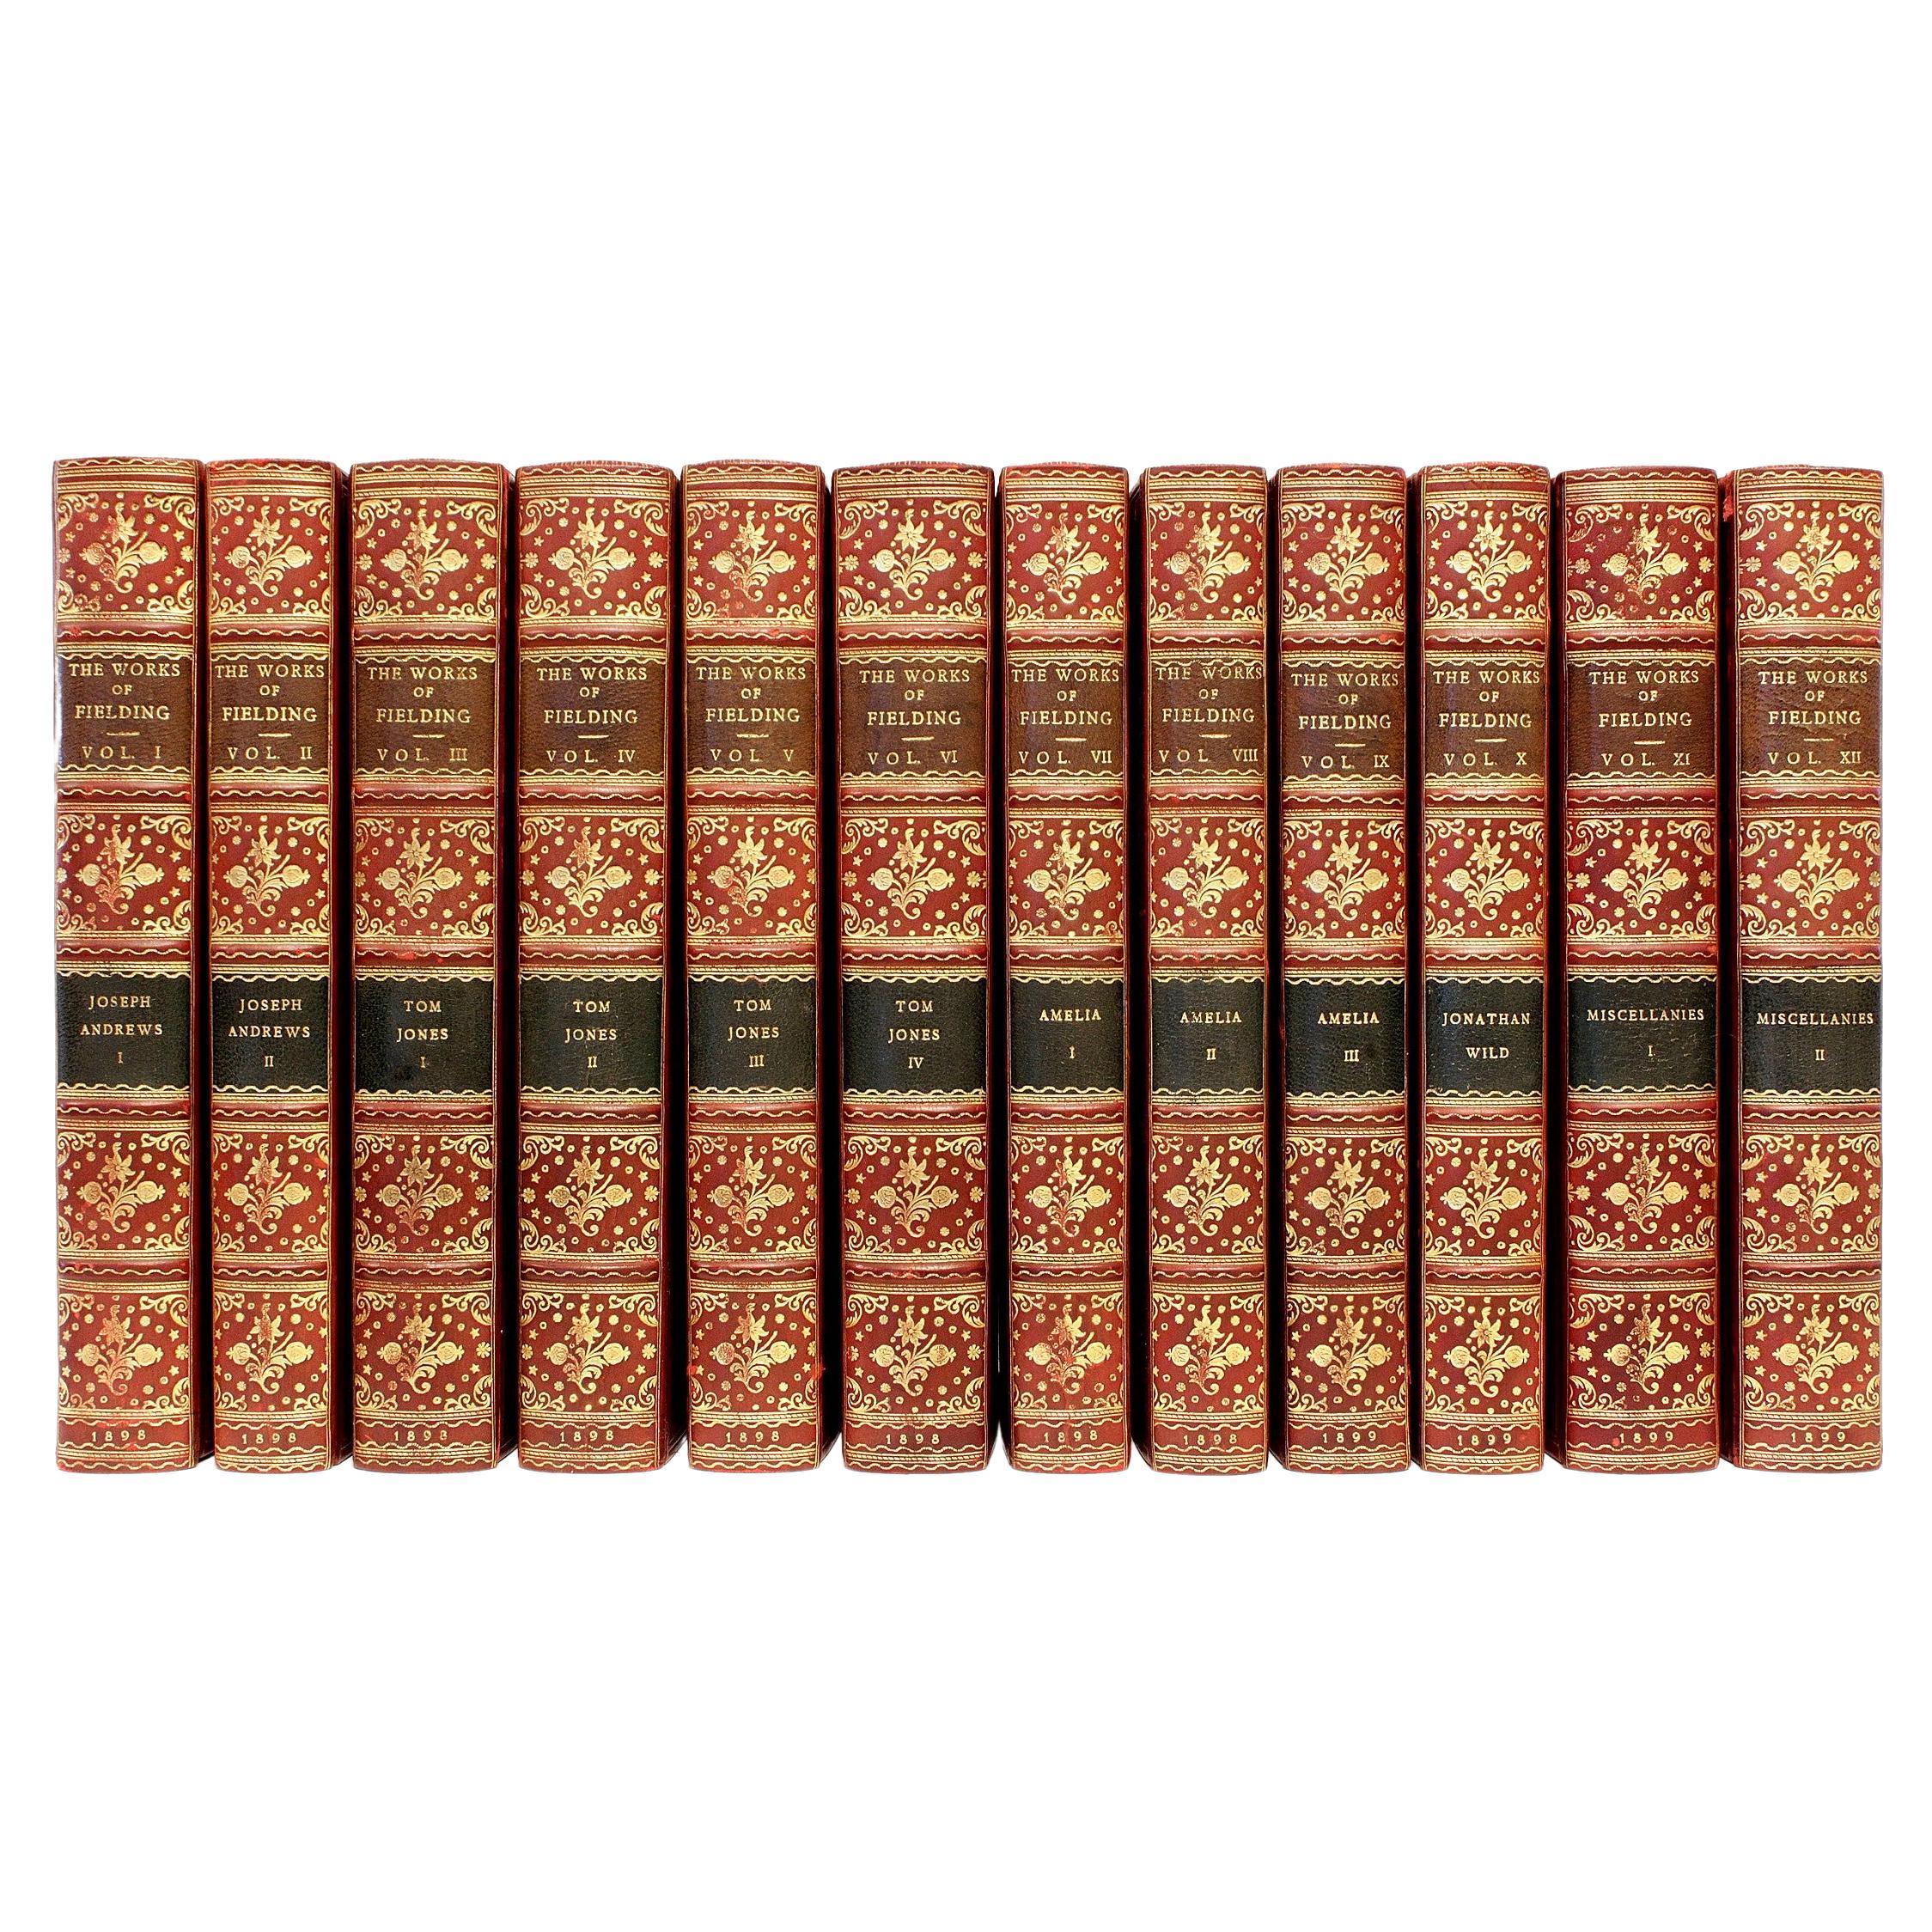 Œuvres complètes d'Henry Fielding, 12 volumes, dans une belle reliure en cuir complète !